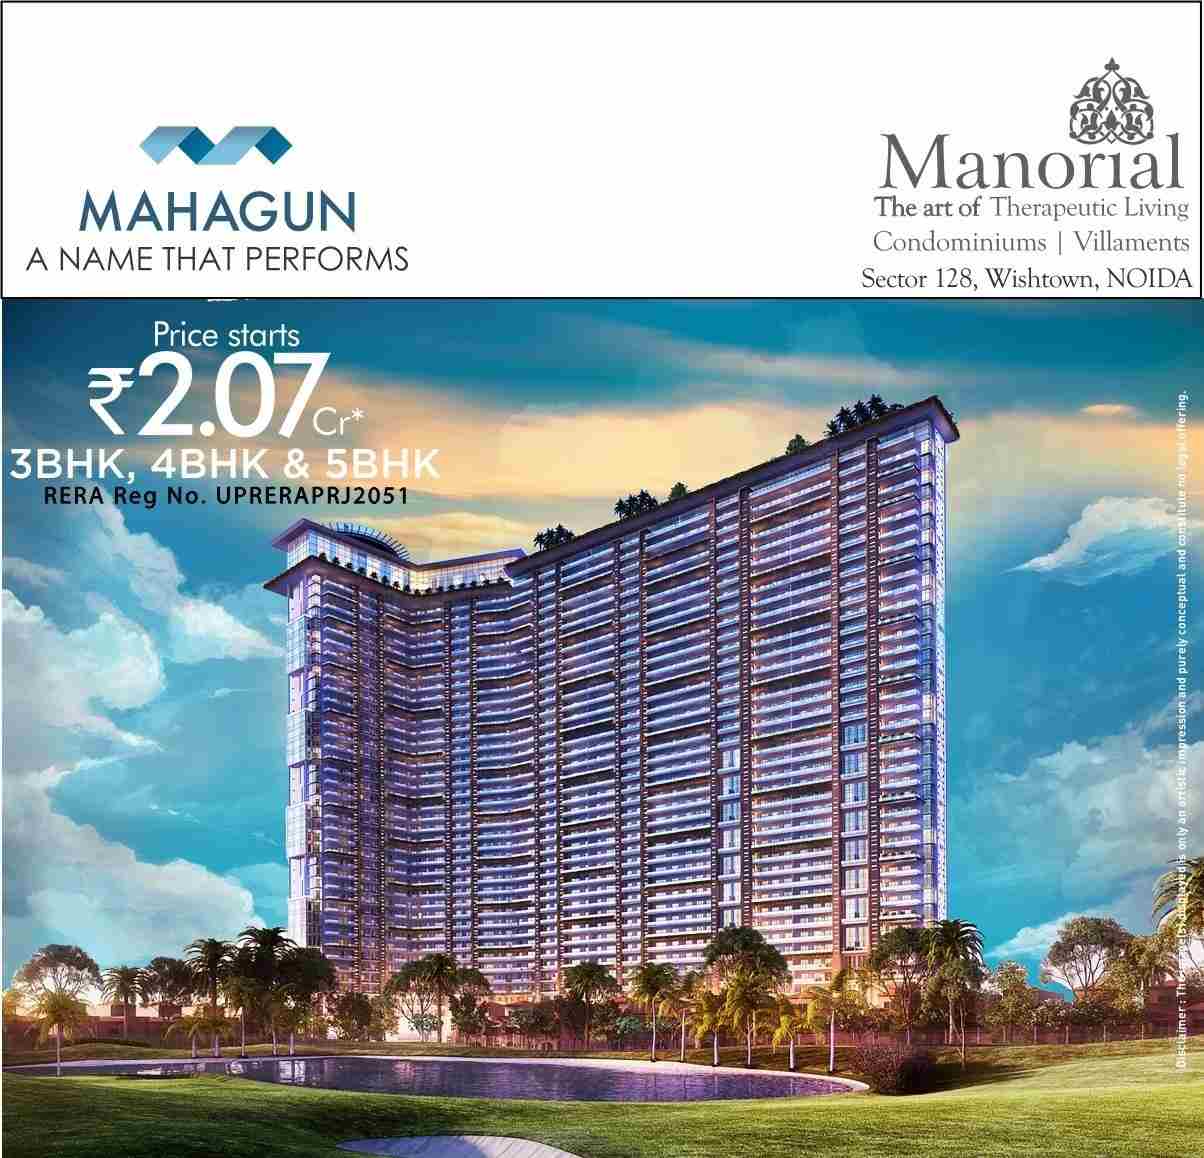 Experience premium luxury along with premium returns at Mahagun Manorial in Noida